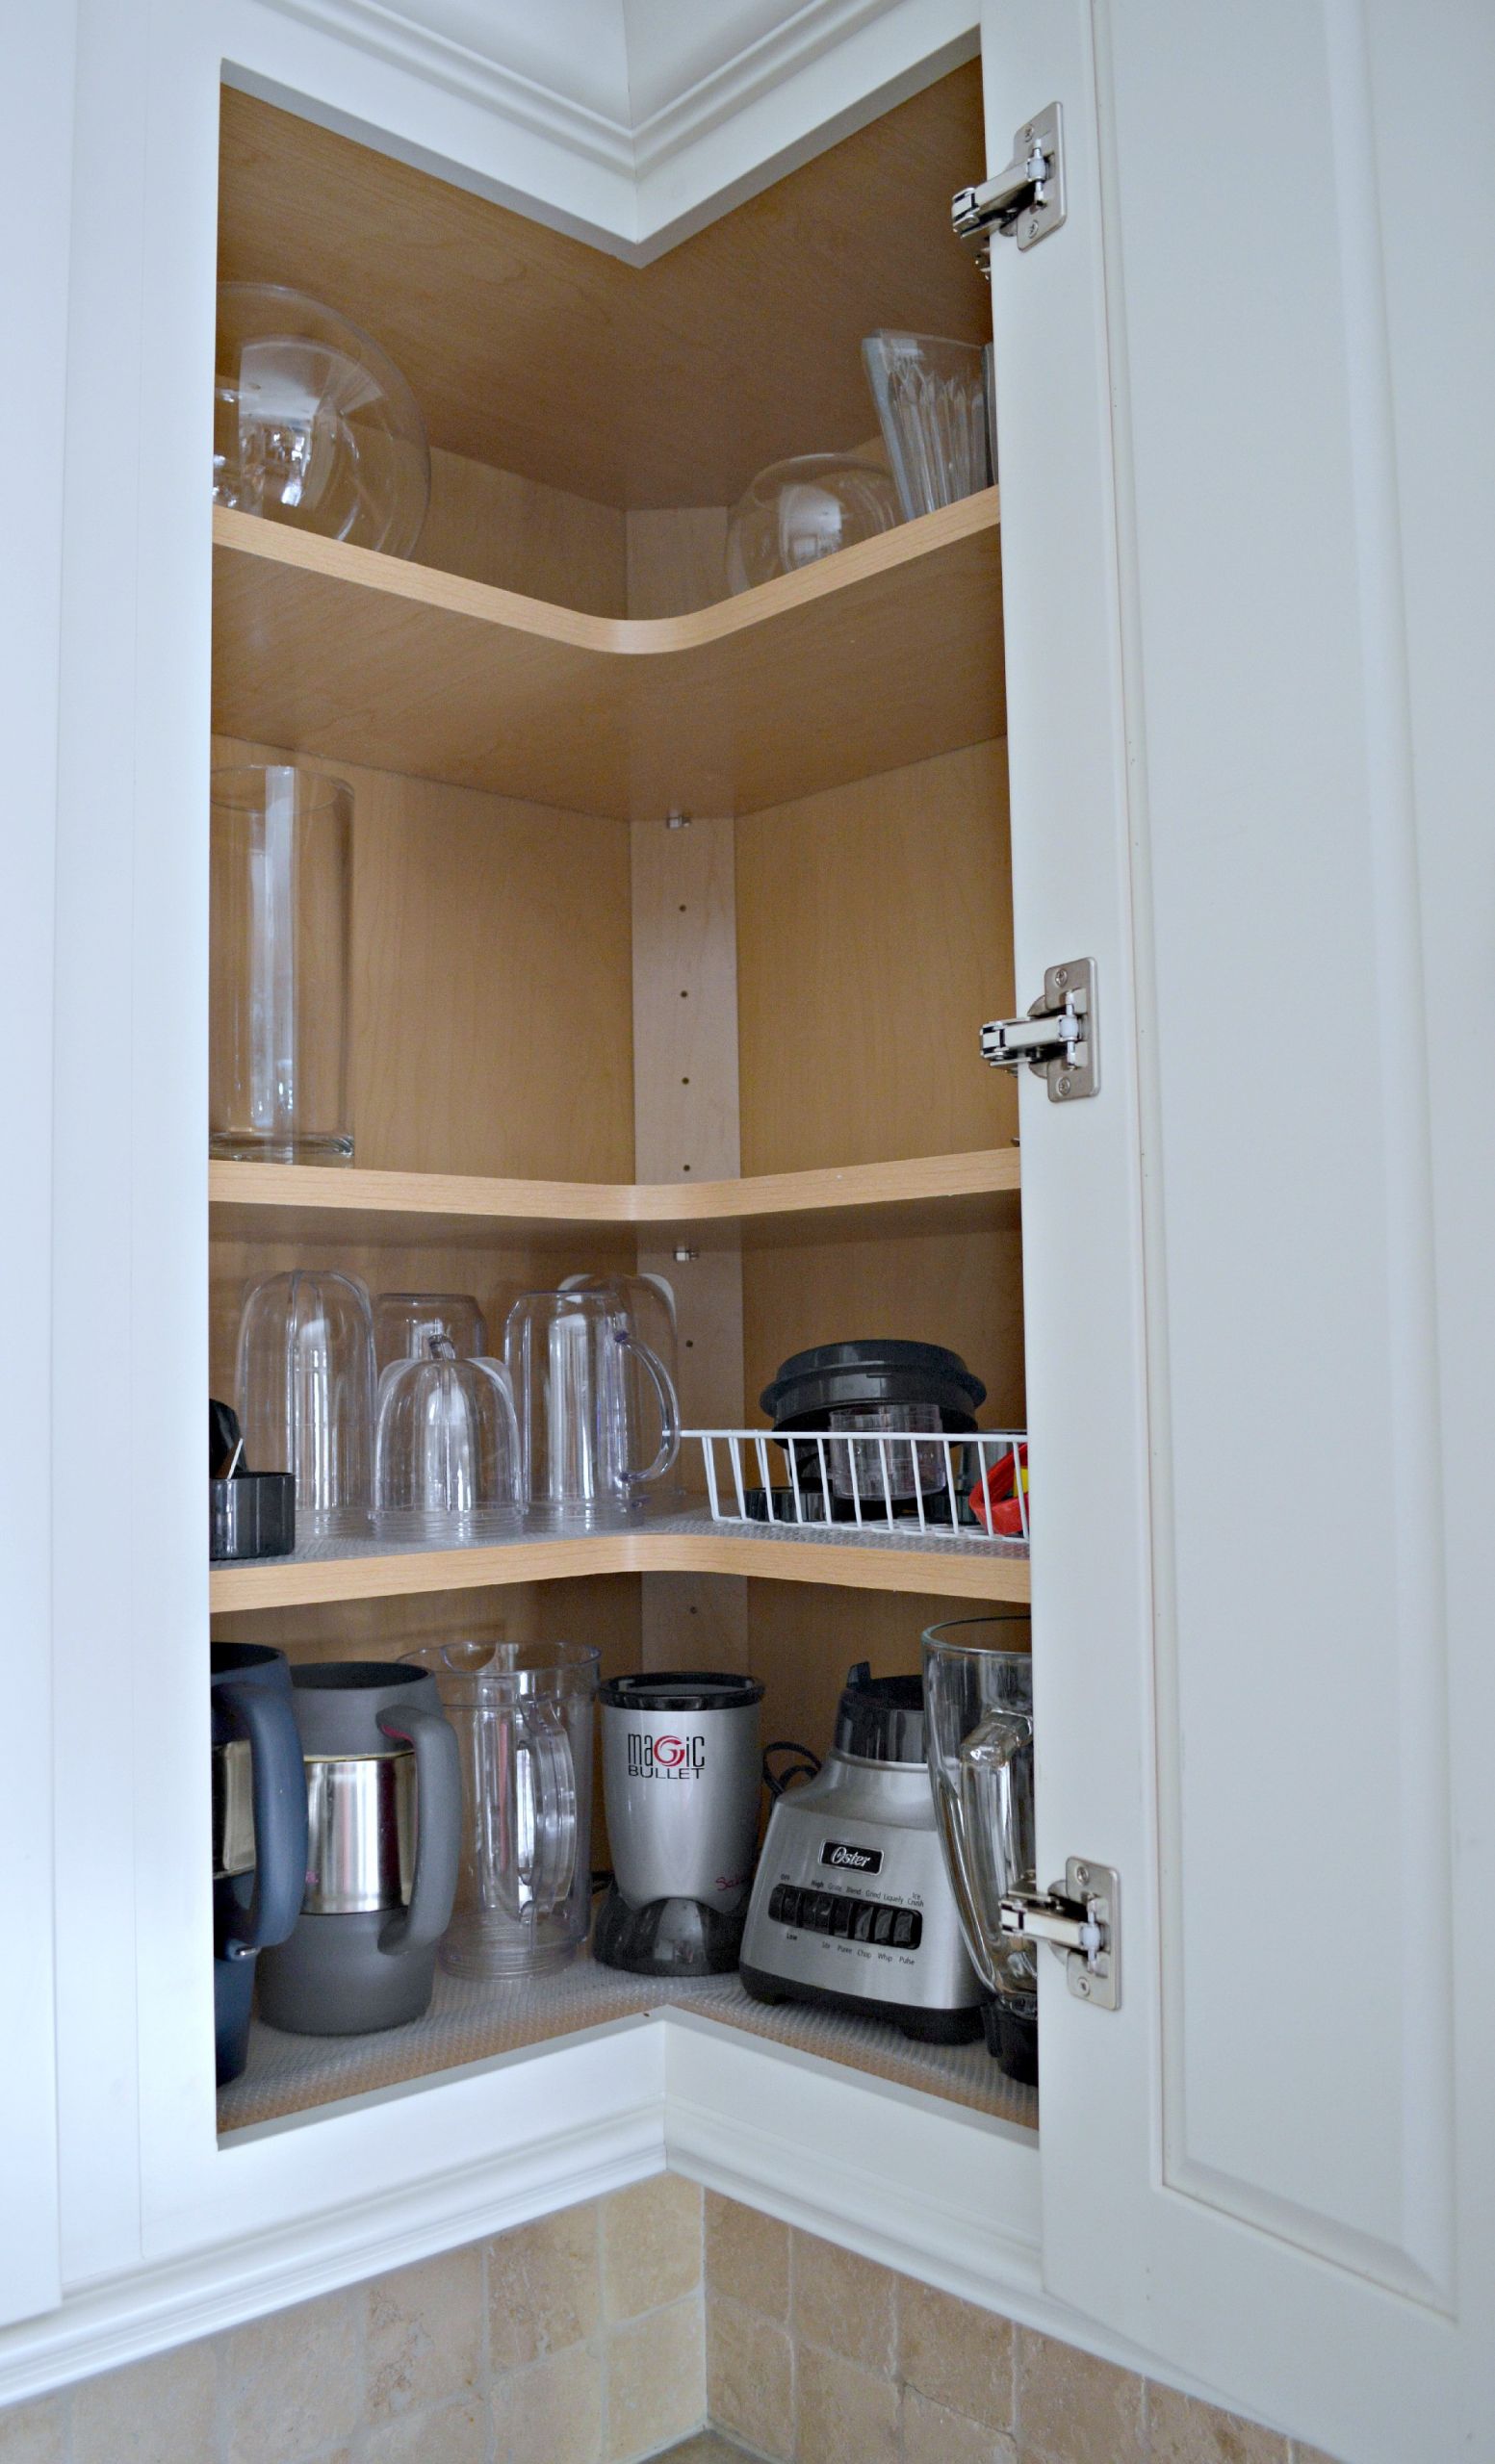 Kitchen Corner Cabinet Organization
 Tips For Designing An Organized Kitchen